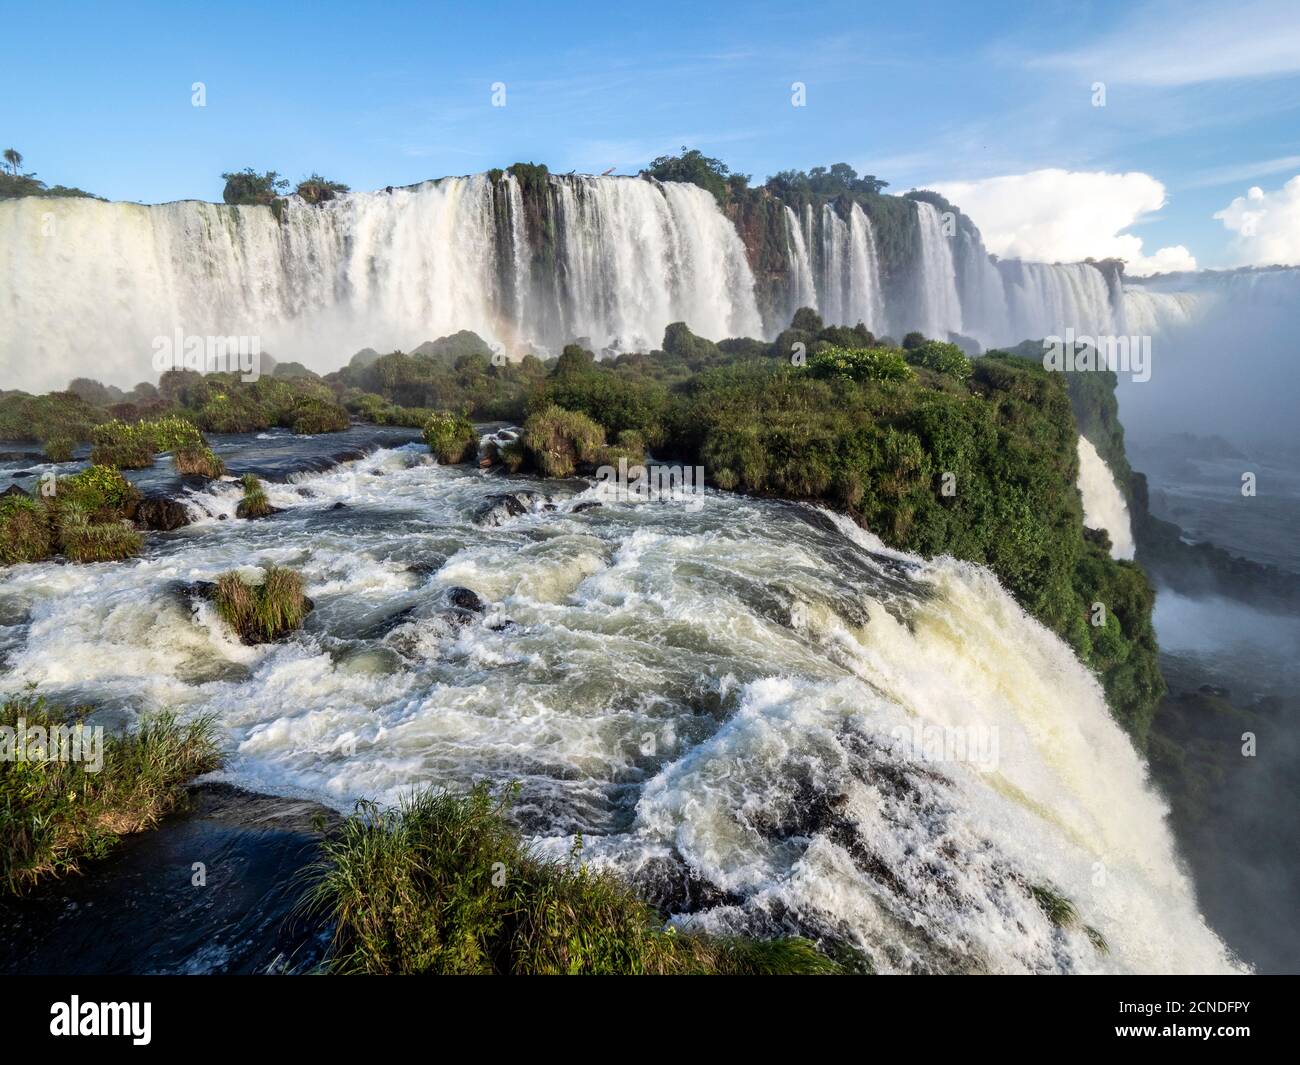 Vista de las Cataratas del Iguazú (Cataratas del Iguazú), Patrimonio de la Humanidad de la UNESCO, desde el lado brasileño, Paraná, Brasil Foto de stock